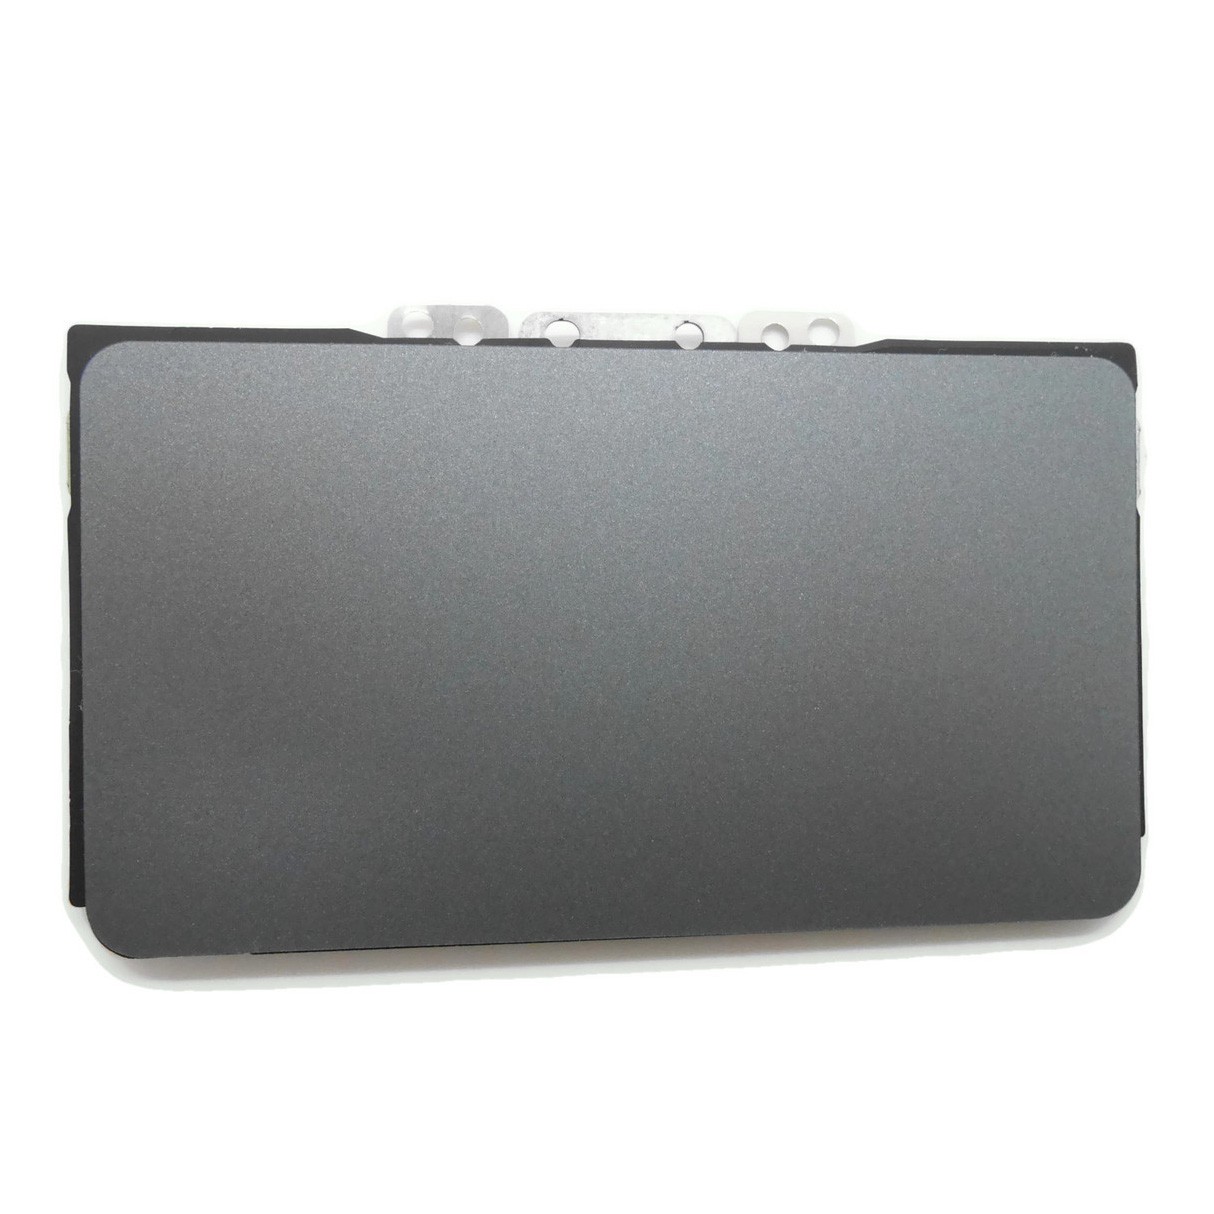 Placa Touchpad + Suporte e Flat P/ Notebook Acer Chromebook C710 C710-2833 PN: yx-am0r0000300 - Retirado